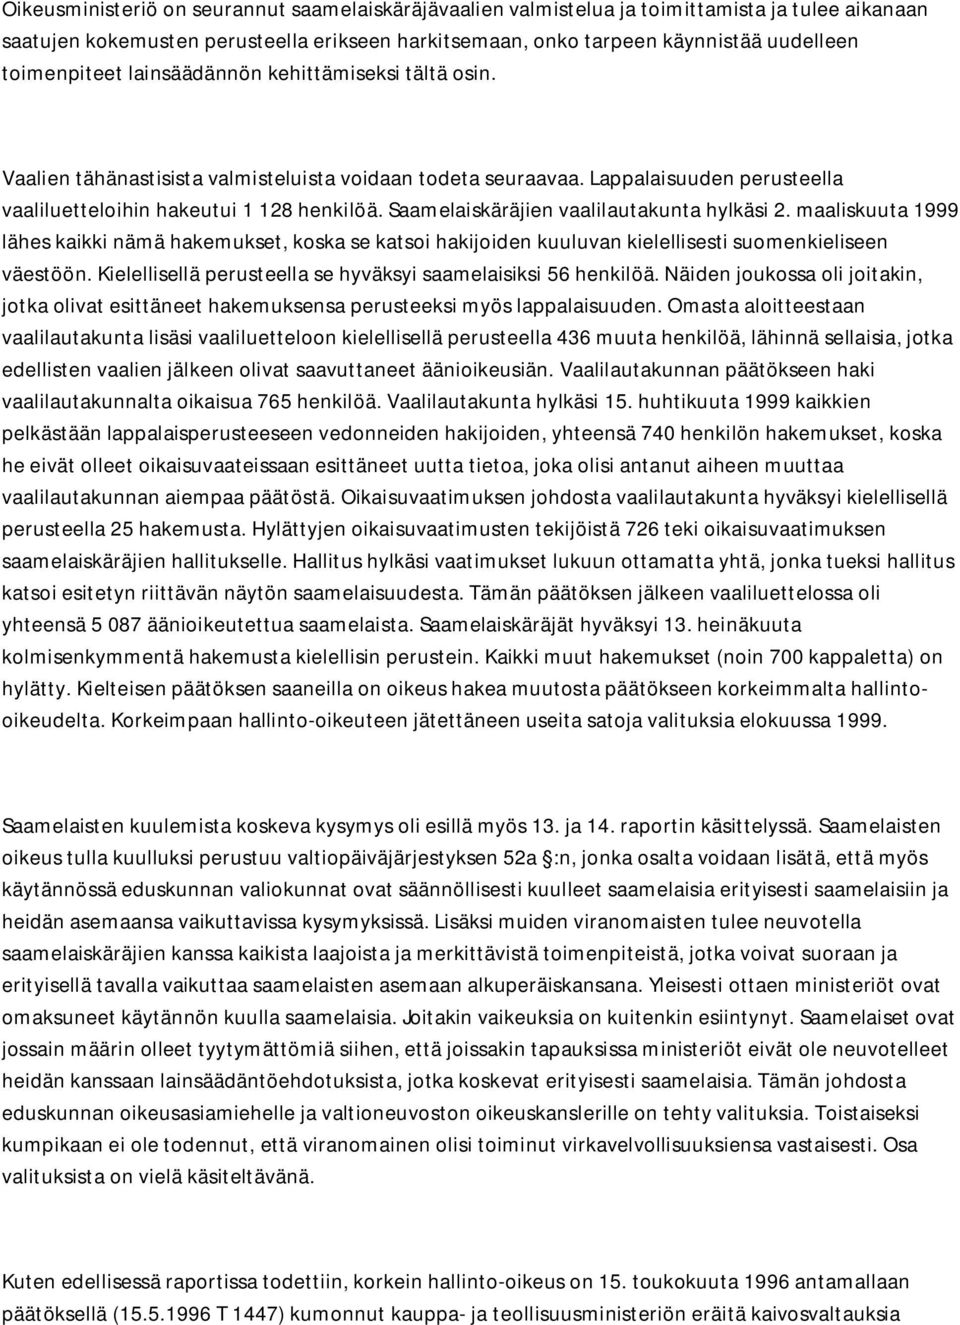 Saamelaiskäräjien vaalilautakunta hylkäsi 2. maaliskuuta 1999 lähes kaikki nämä hakemukset, koska se katsoi hakijoiden kuuluvan kielellisesti suomenkieliseen väestöön.